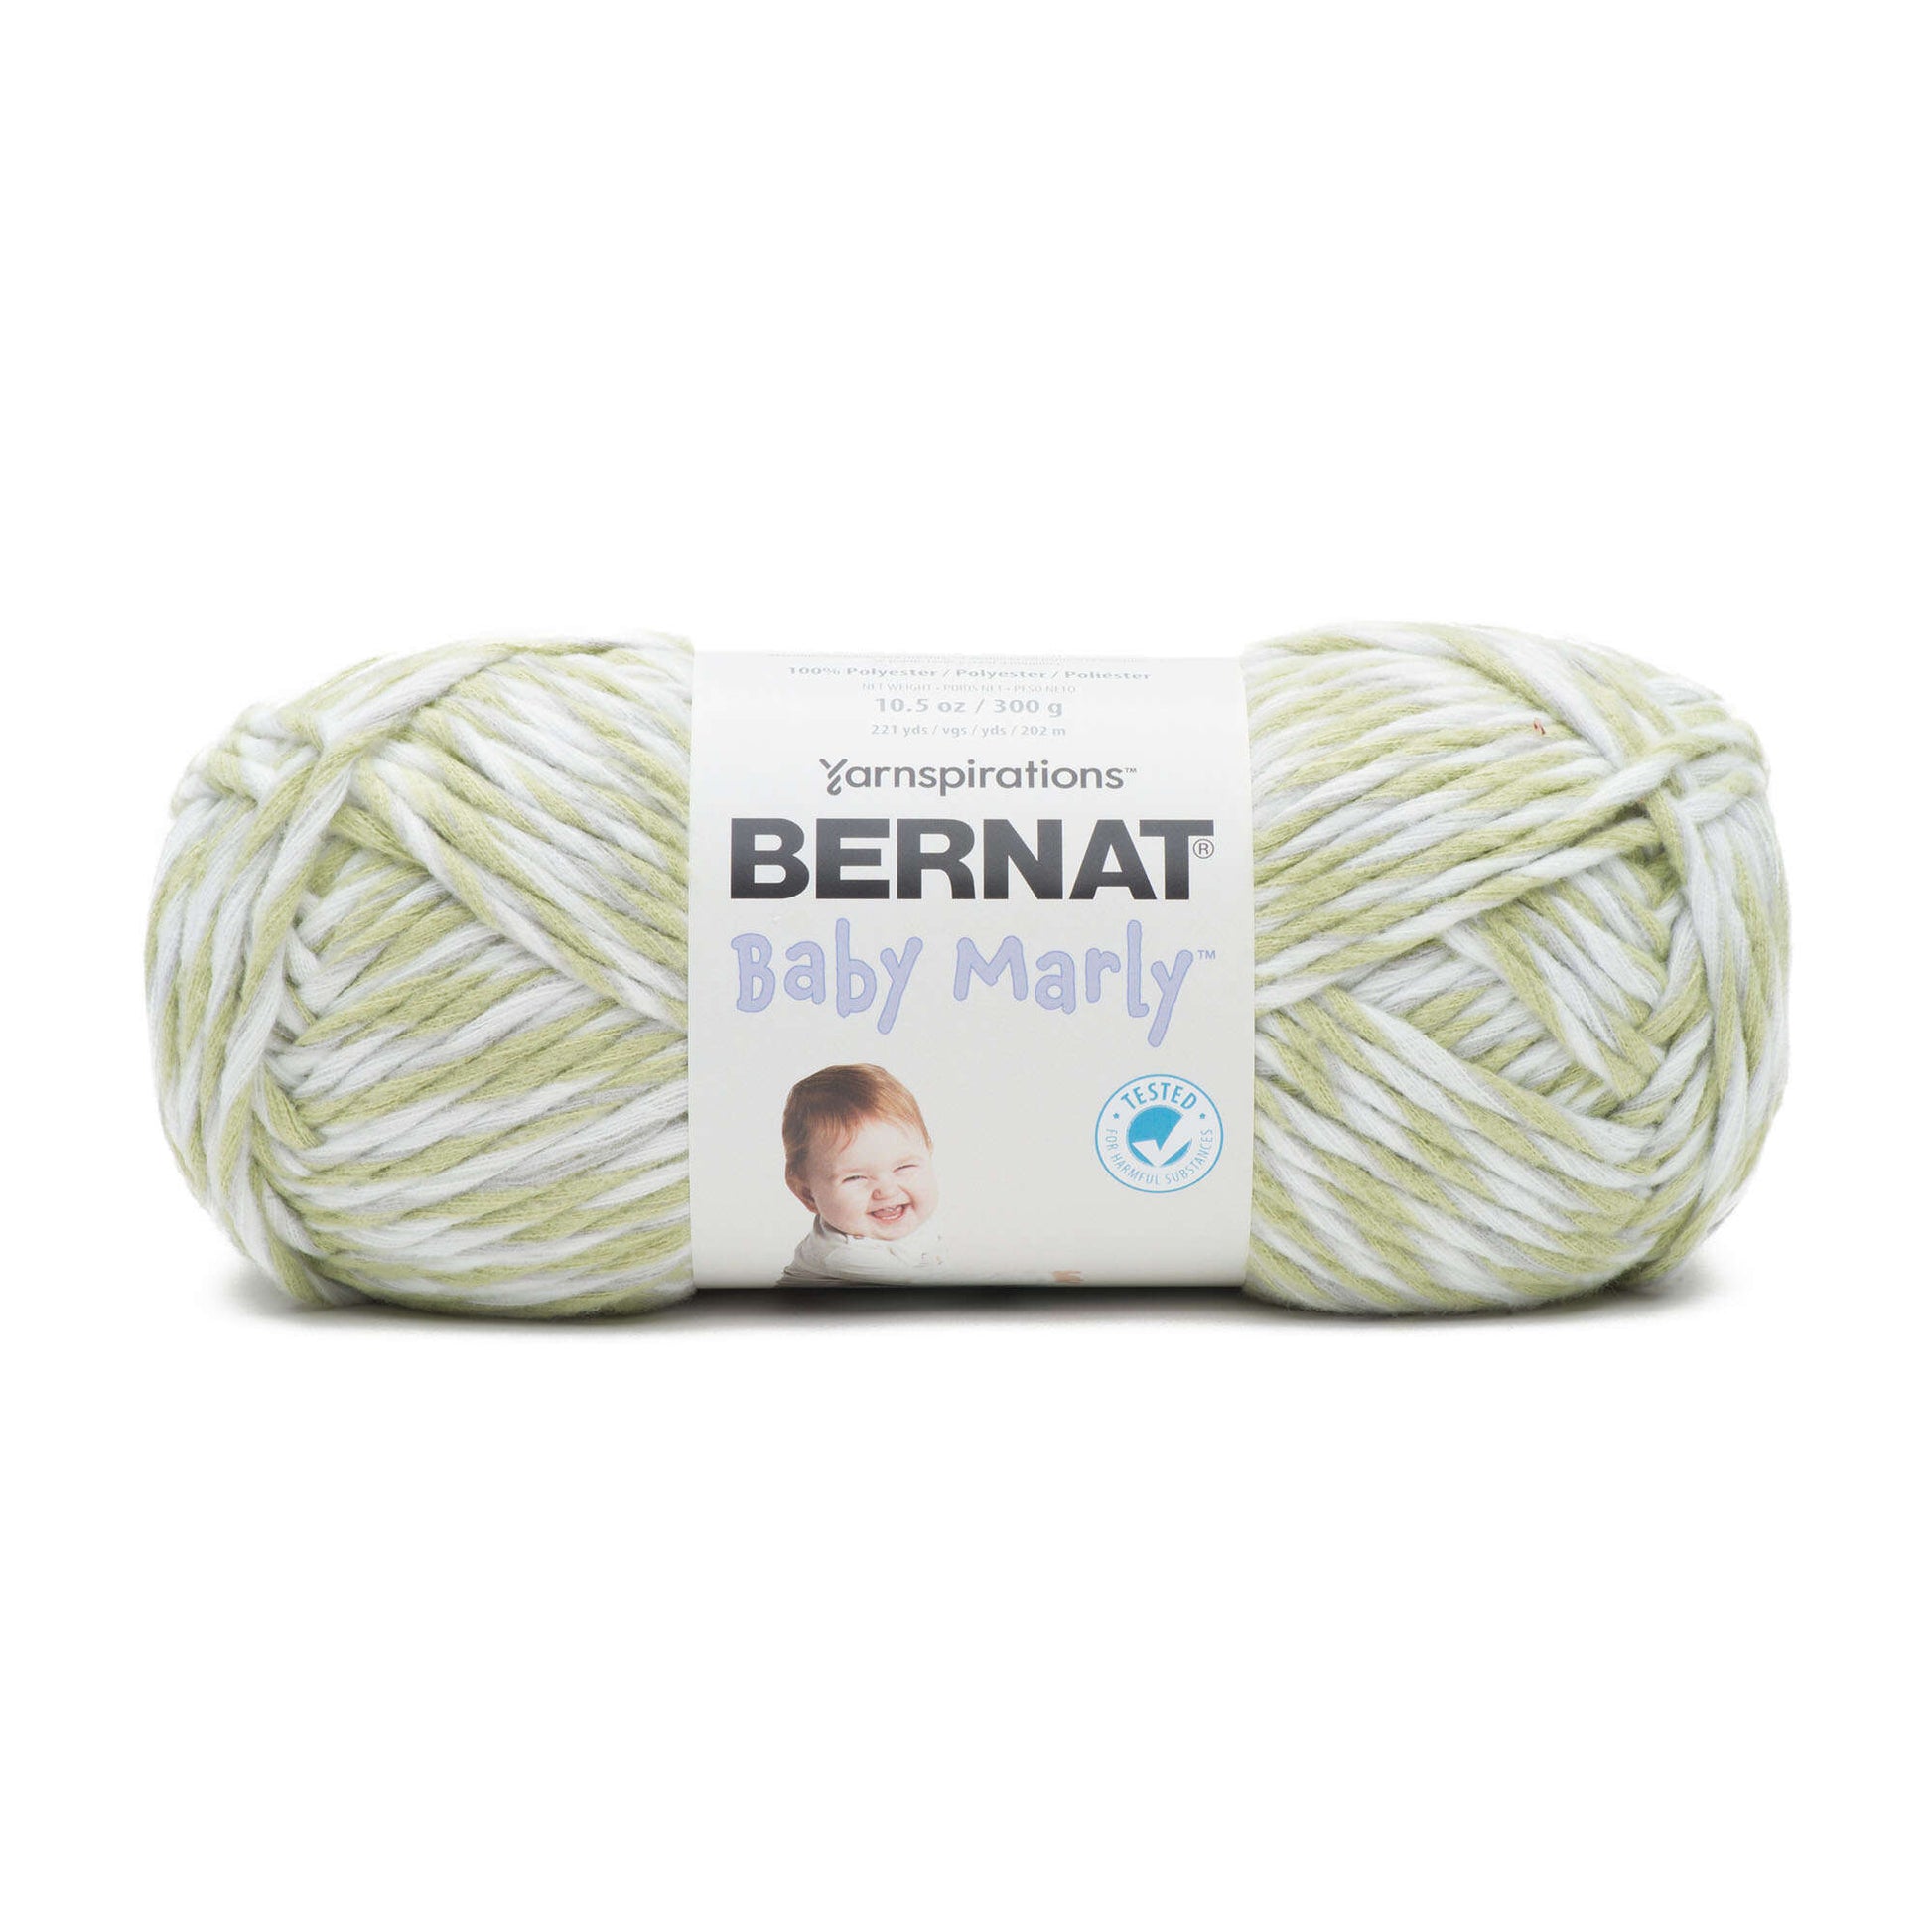 Bernat Baby Marly Yarn - Discontinued Misty Fern